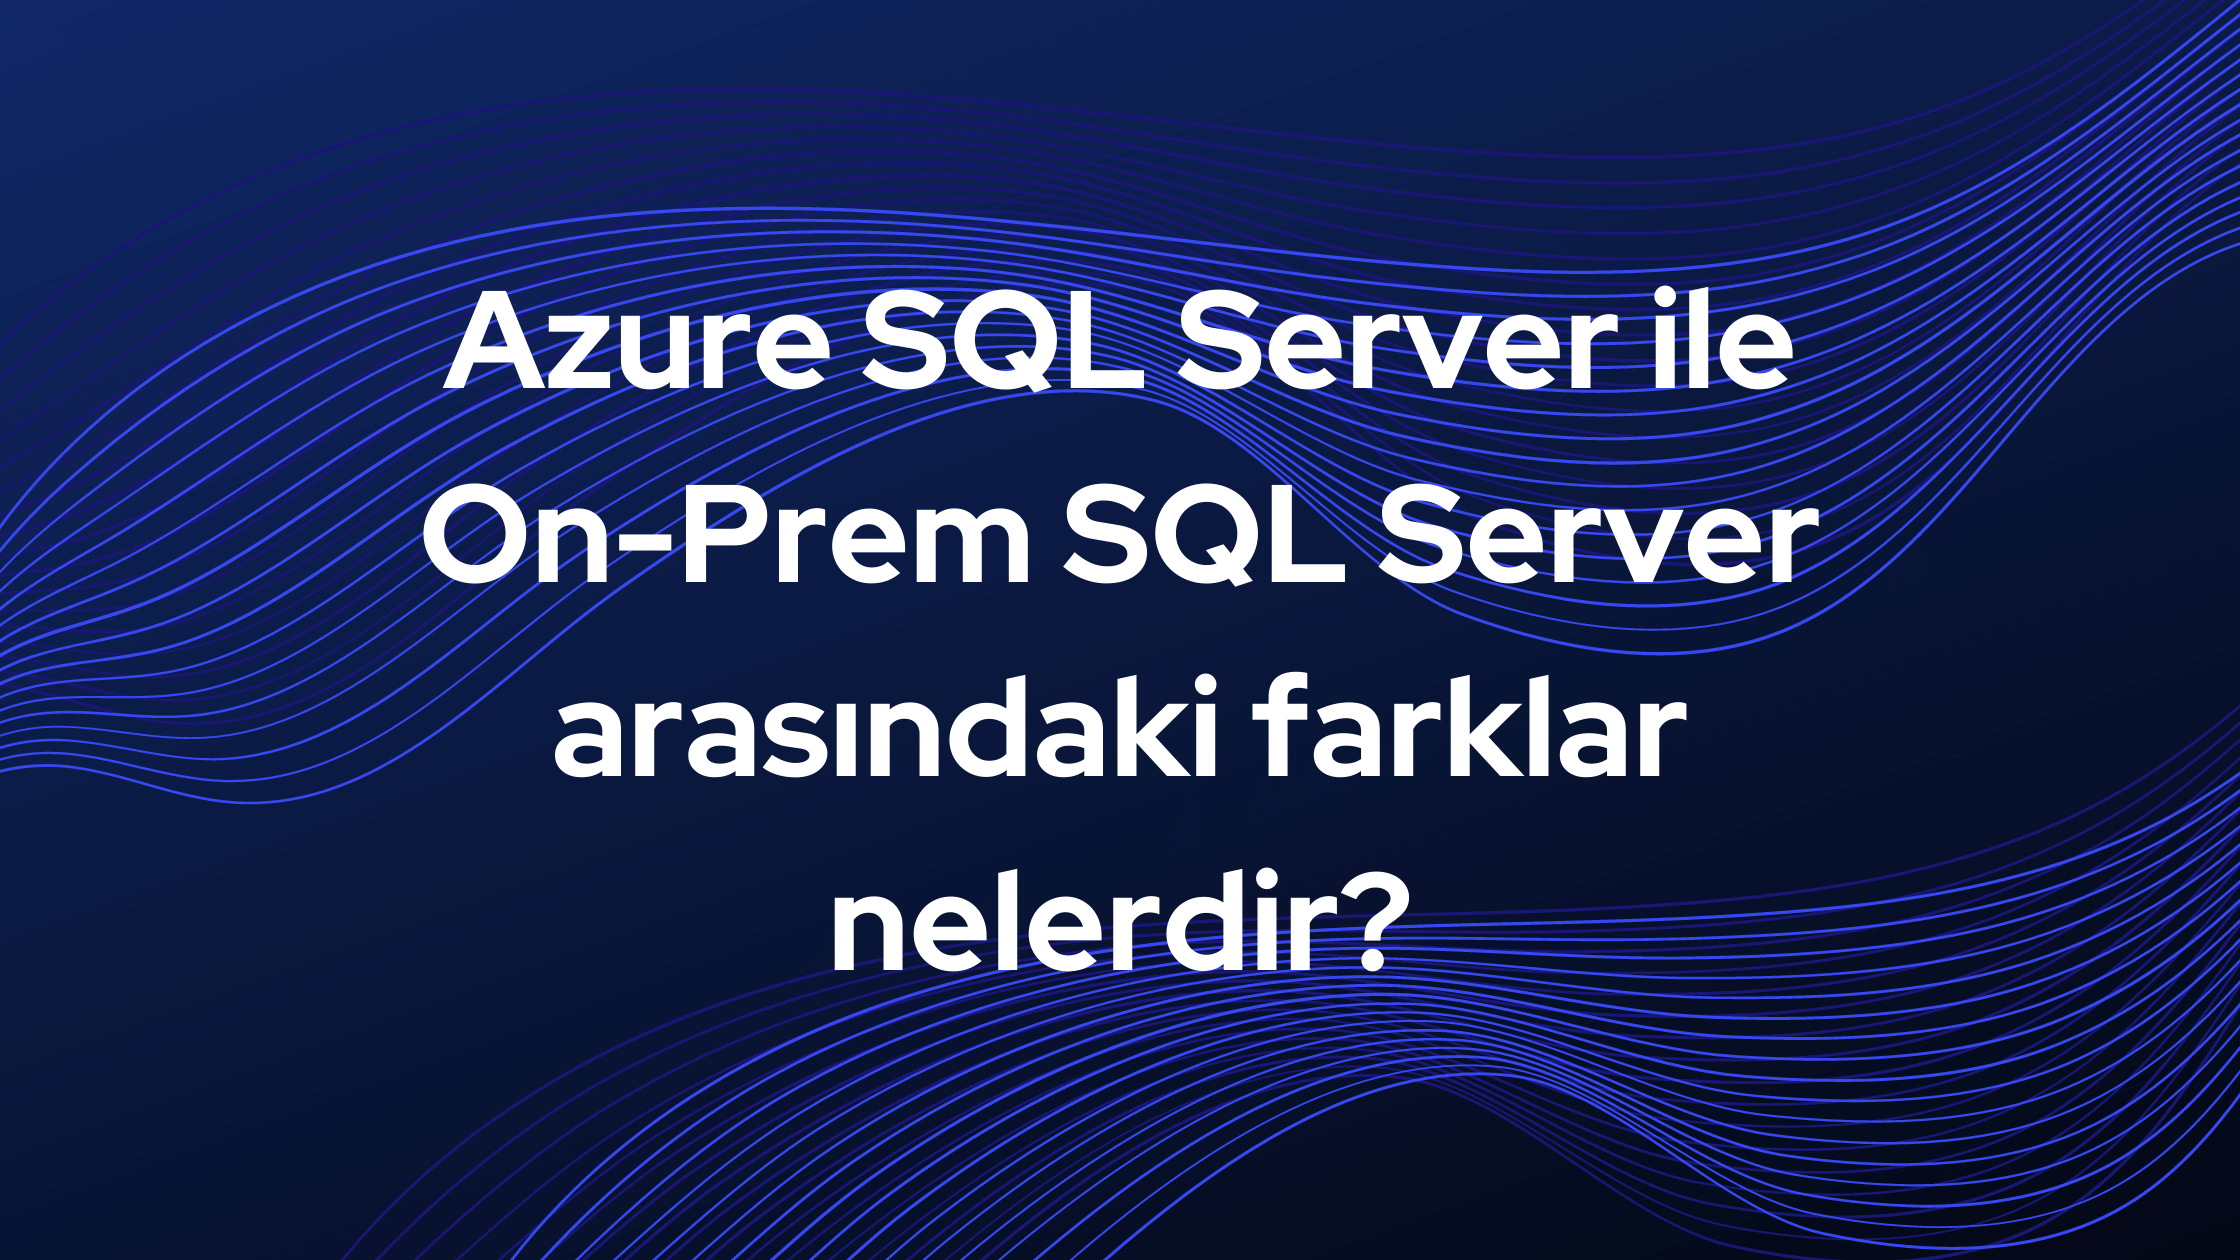 Azure SQL Server ile On-Prem SQL Server arasındaki farklar nelerdir?